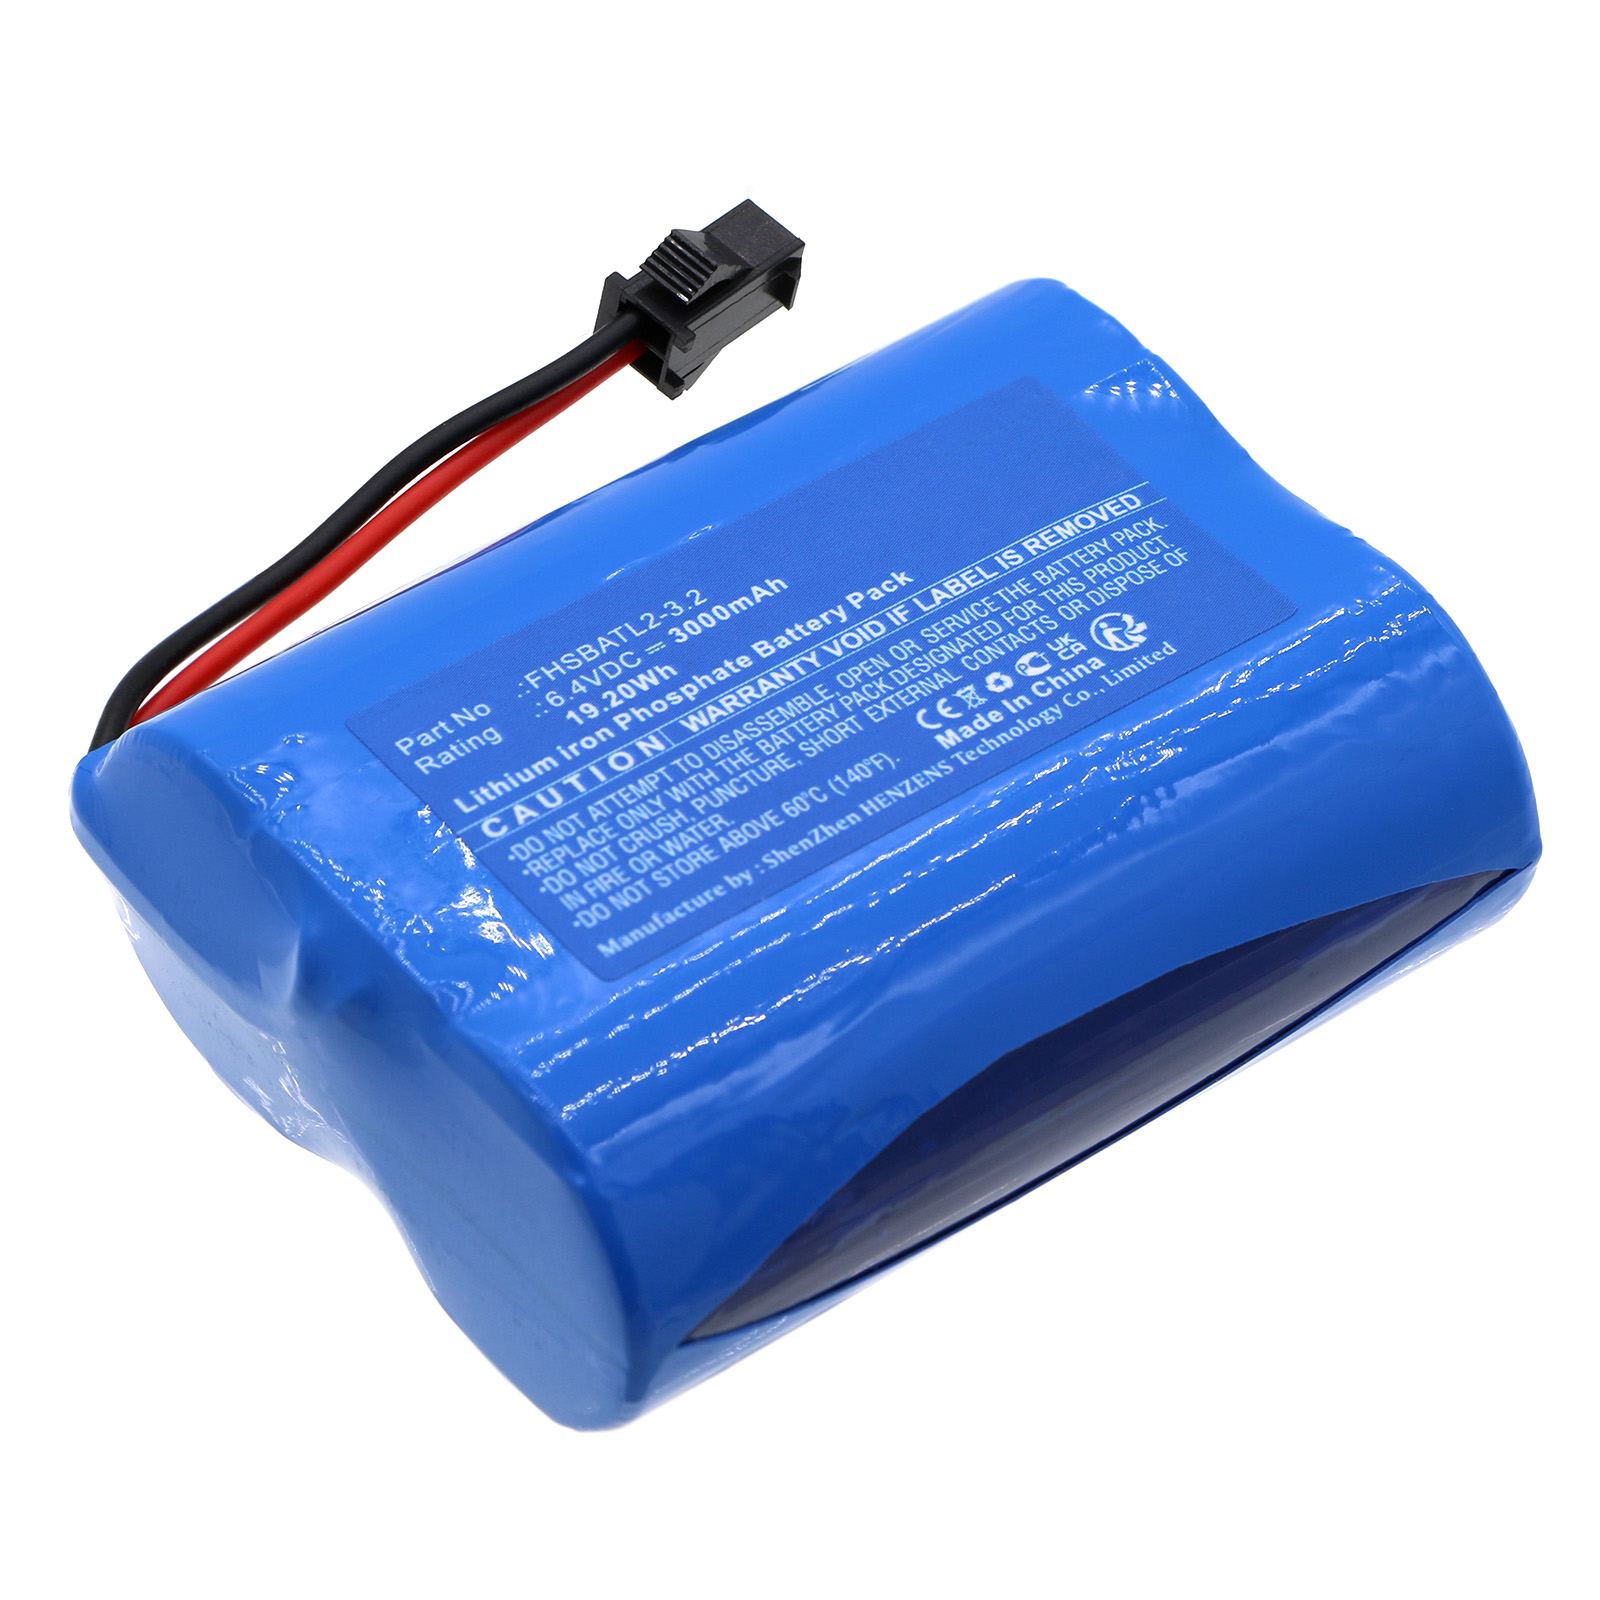 Synergy Digital Emergency Lighting Battery, Compatible with Fullham FHSBATL2-3.2 Emergency Lighting Battery (LiFePO4, 6.4V, 3000mAh)